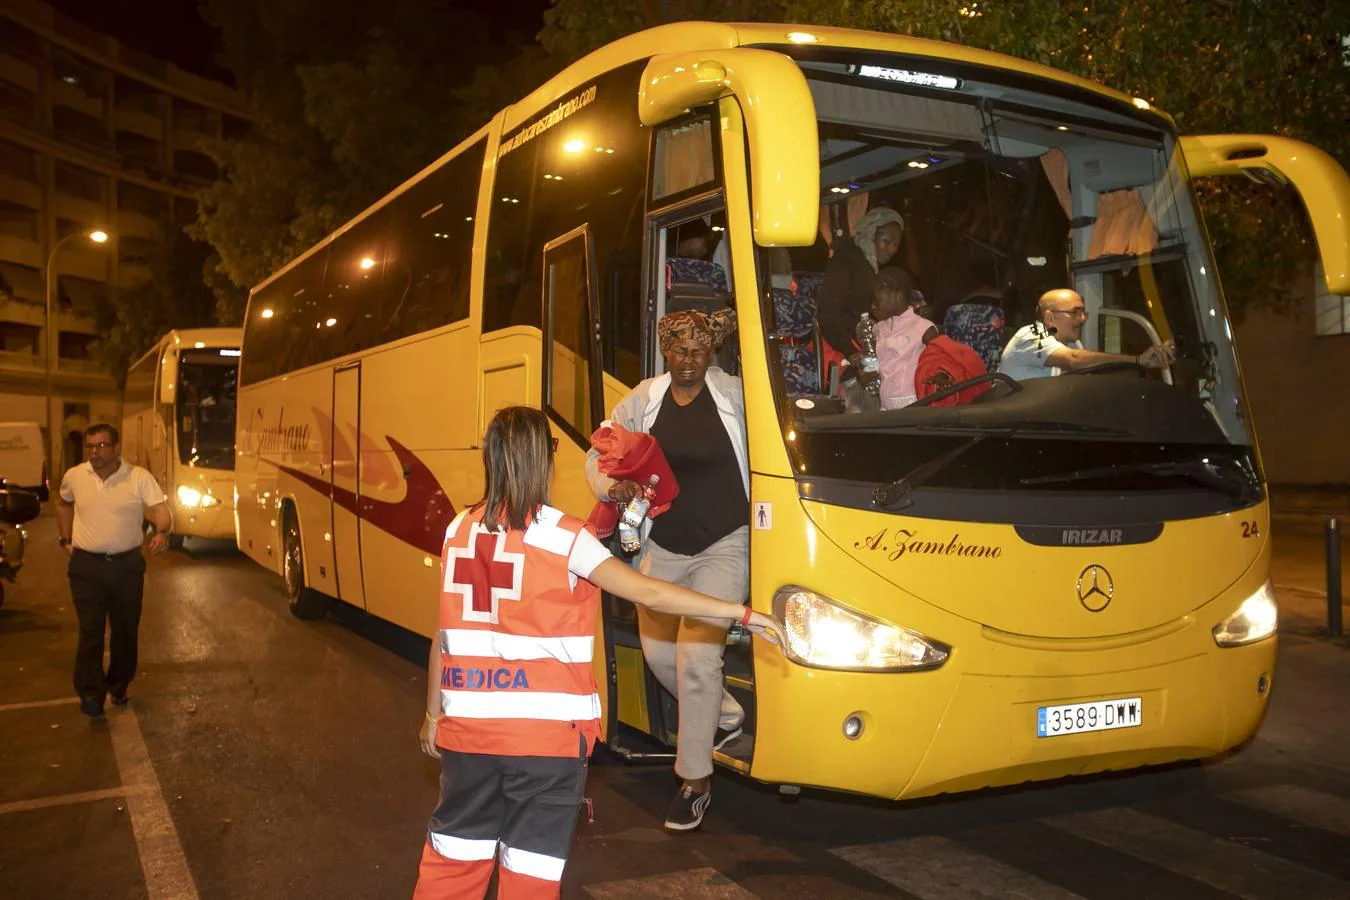 La llegada de los inmigrantes a Córdoba, en imágenes